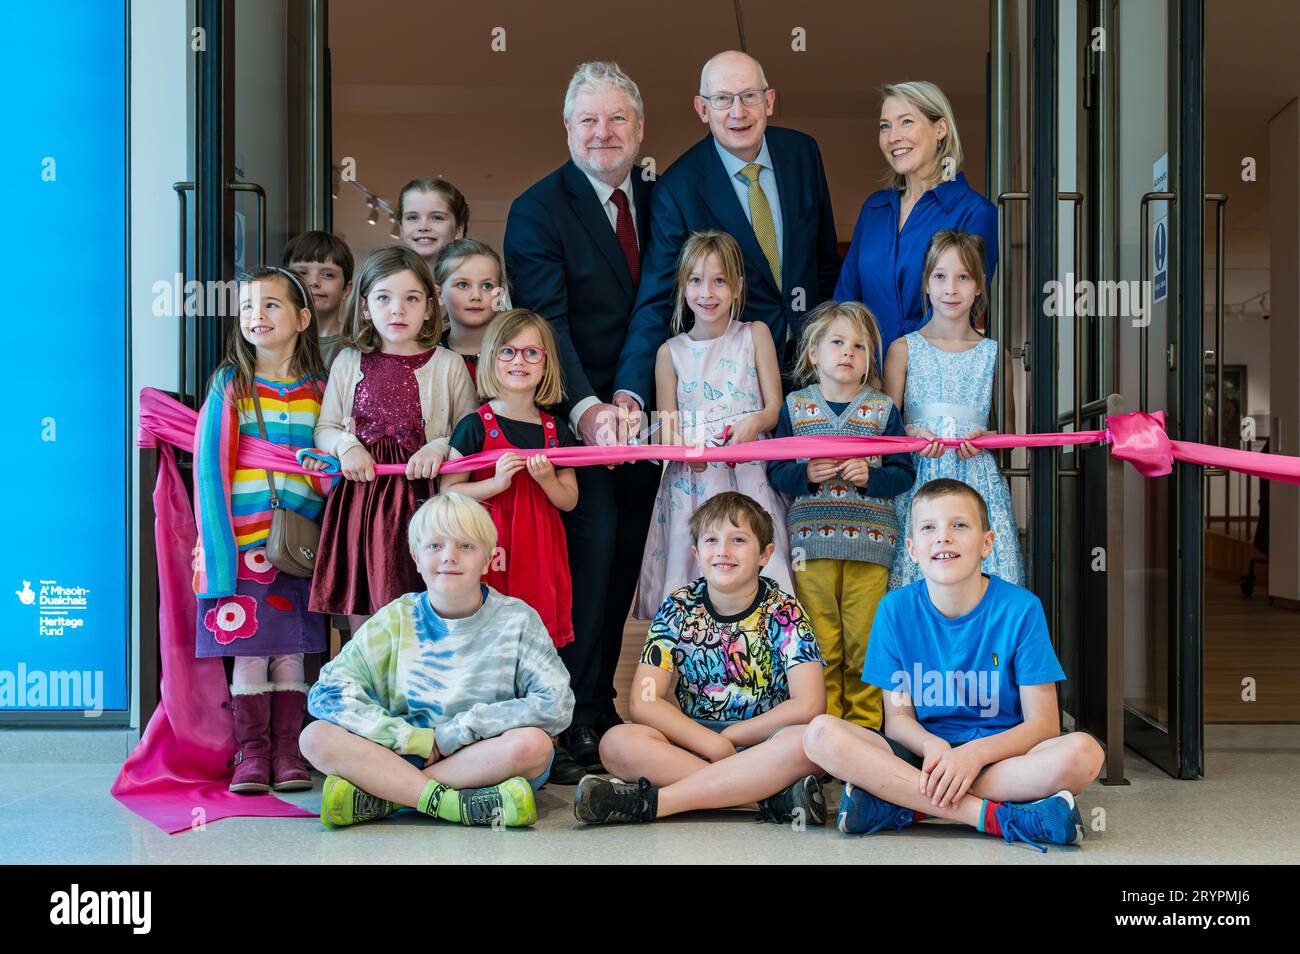 Ministre de la Culture Angus Robertson, John Leighton & Children Curing Ribbon, cérémonie d'ouverture des National Galleries of Scotland, Édimbourg, Royaume-Uni Banque D'Images